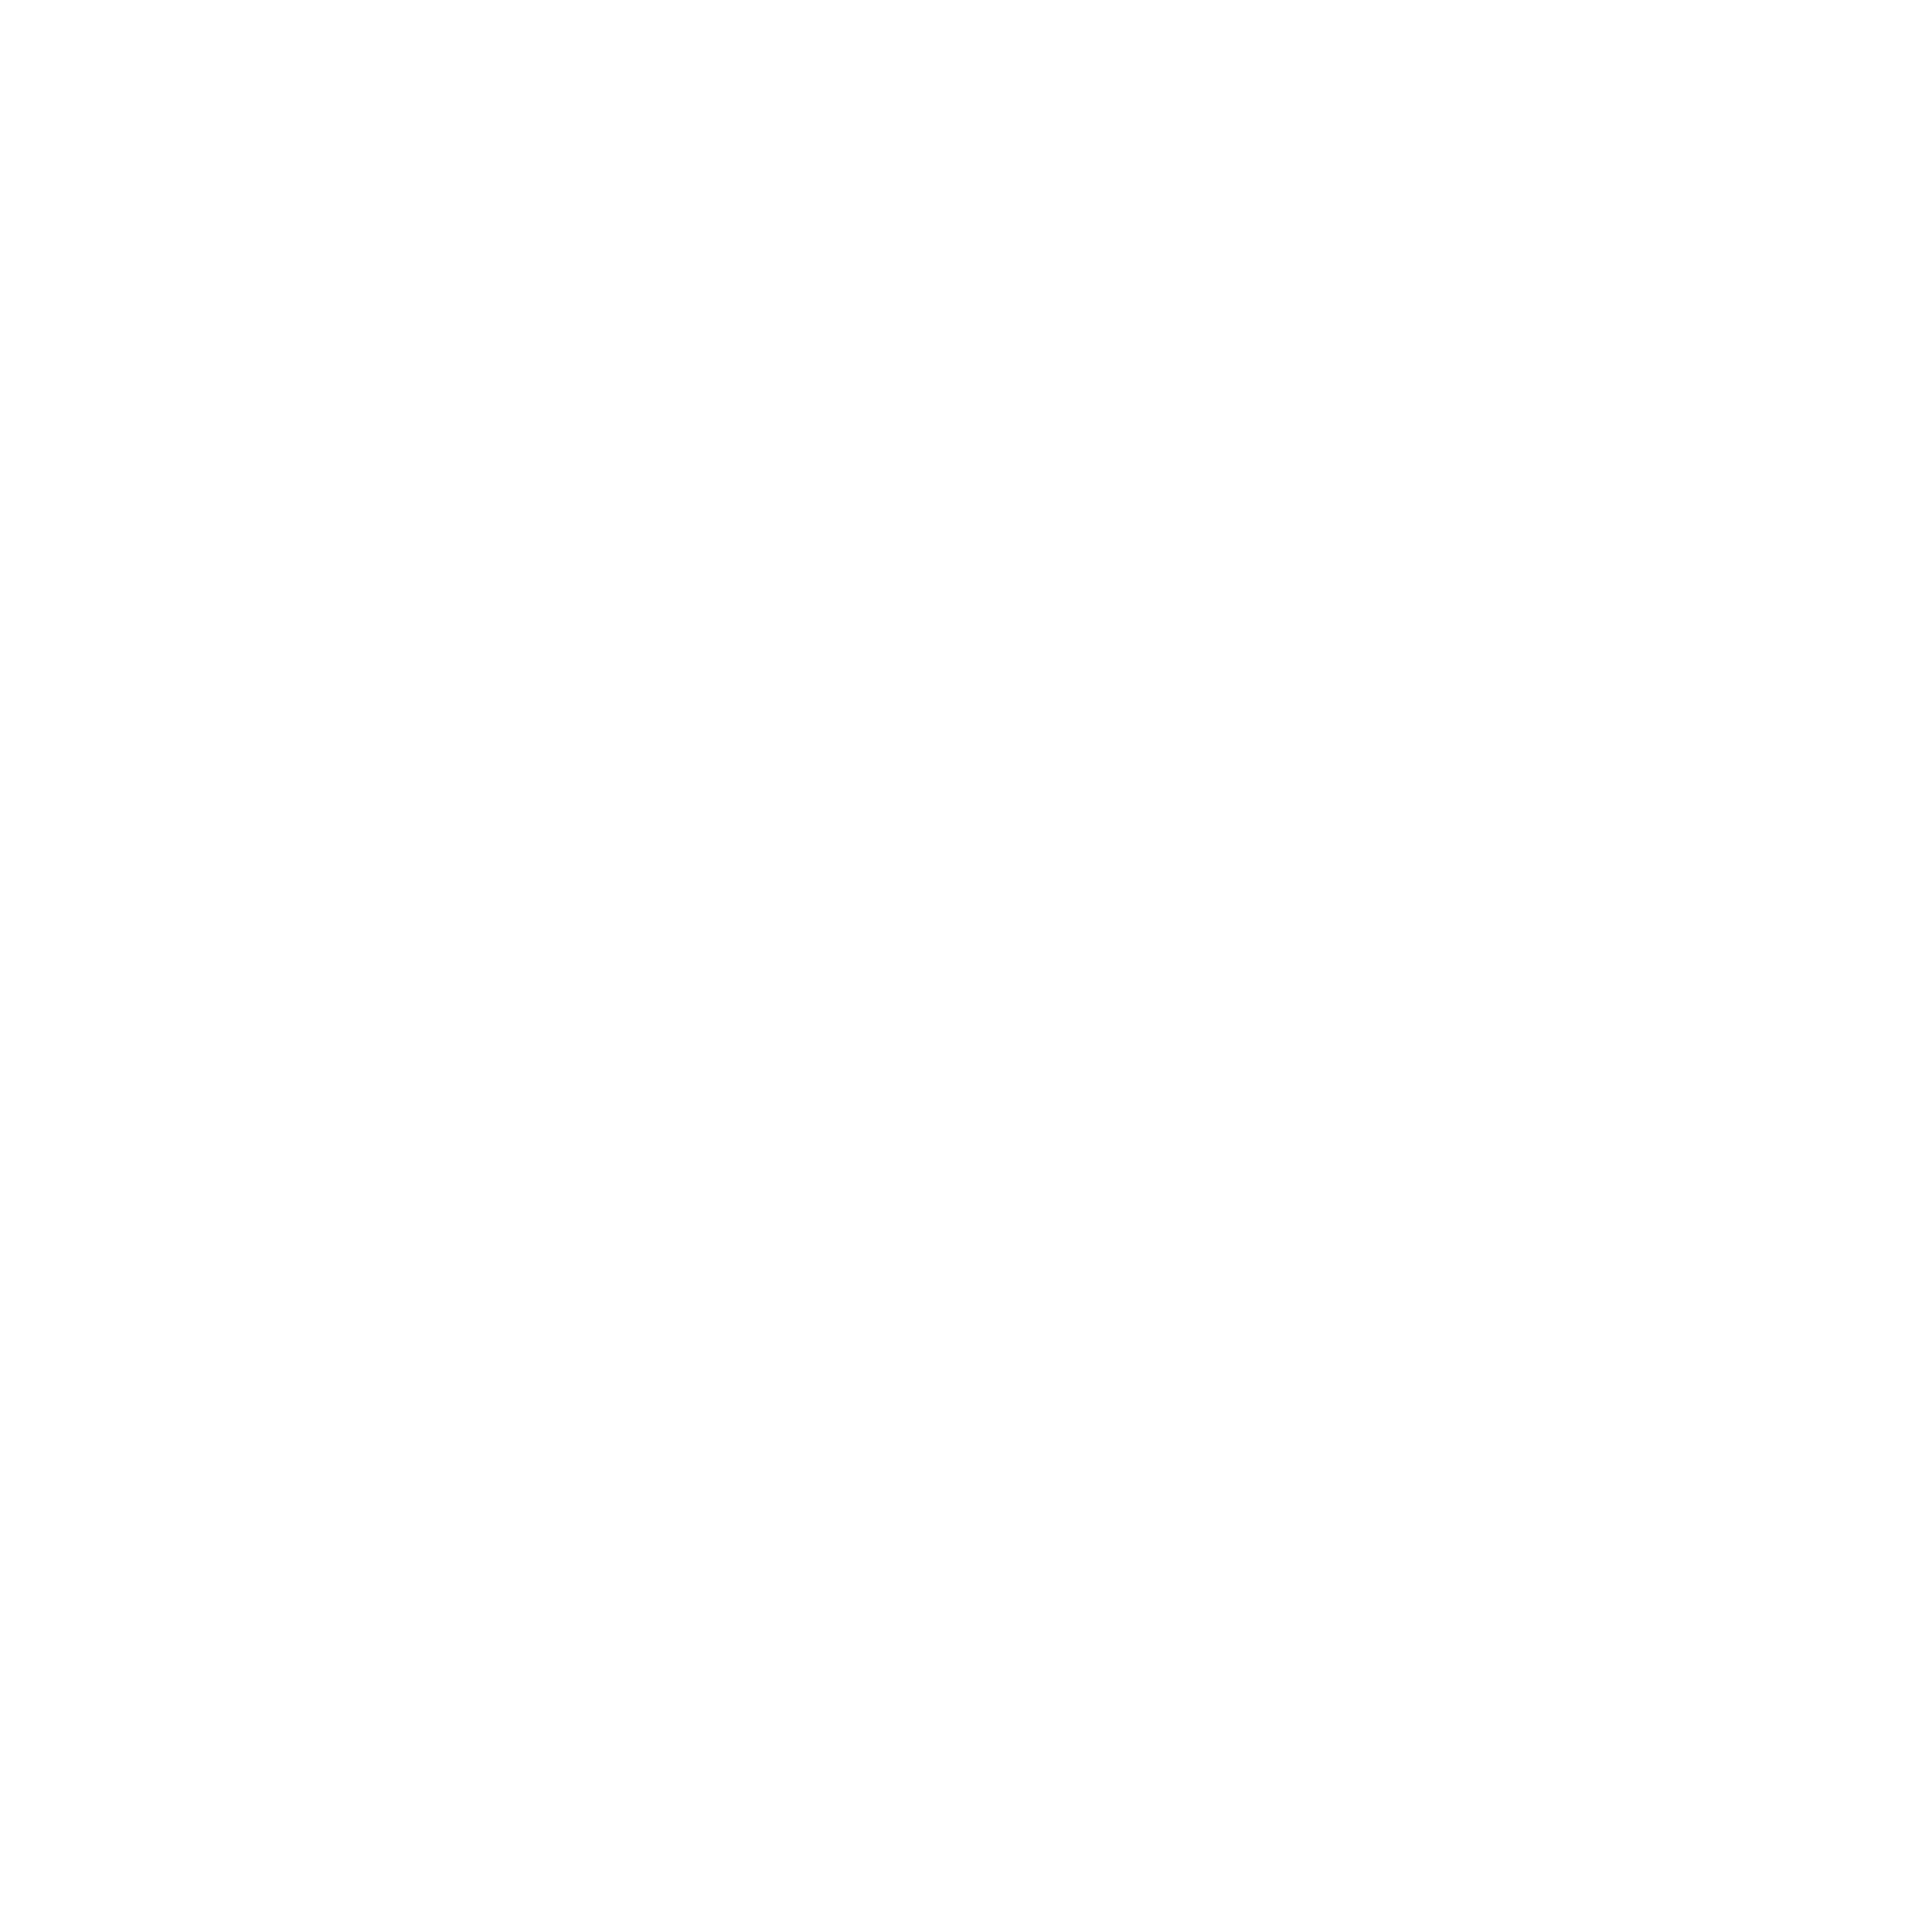 australia icon white